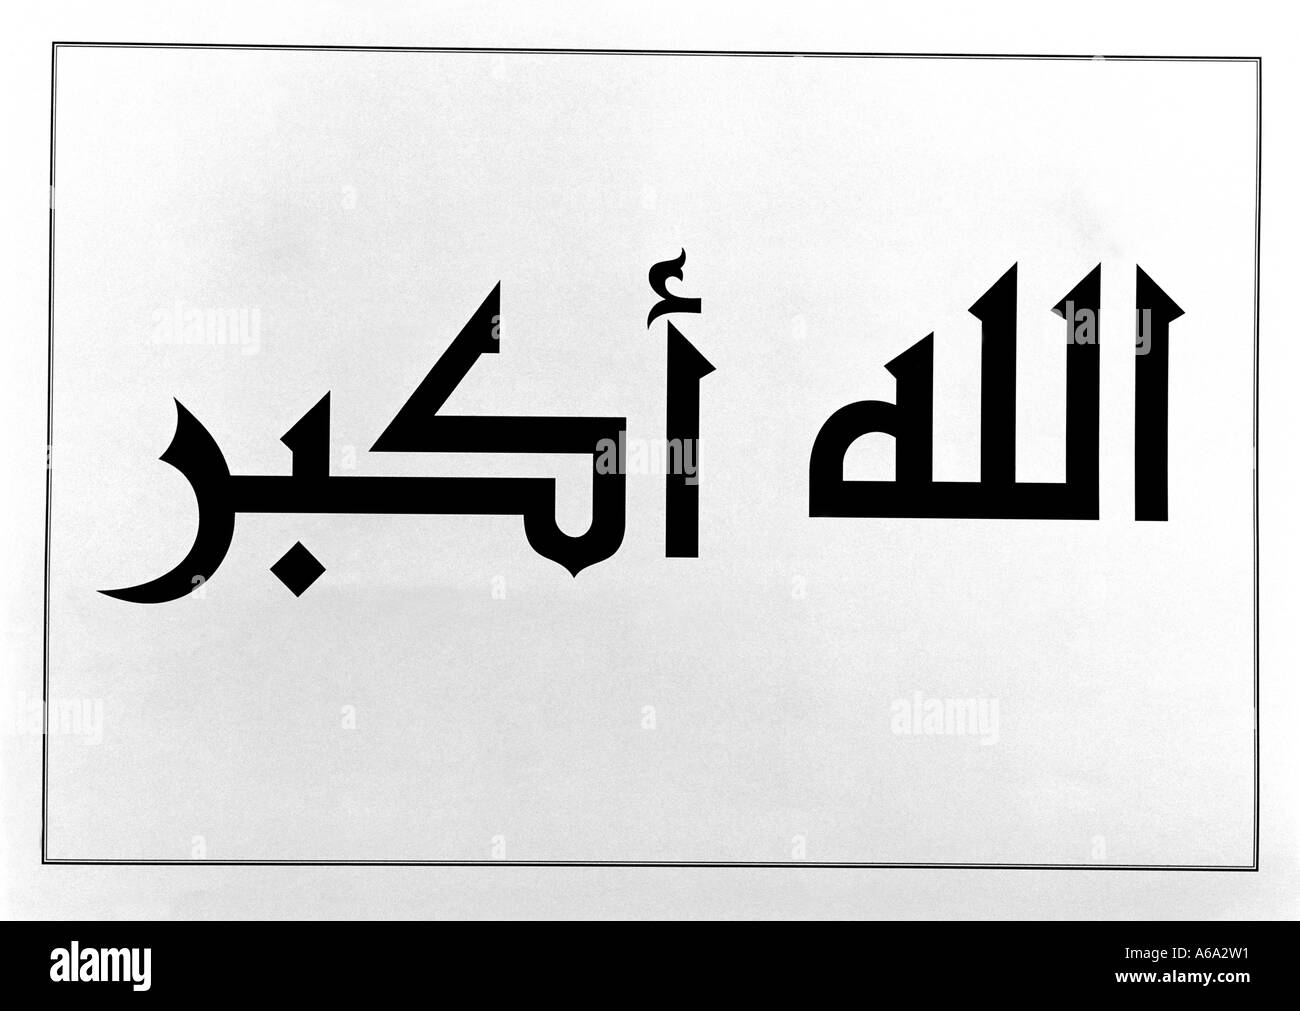 Islamic calligraphy Banque d'images noir et blanc - Alamy